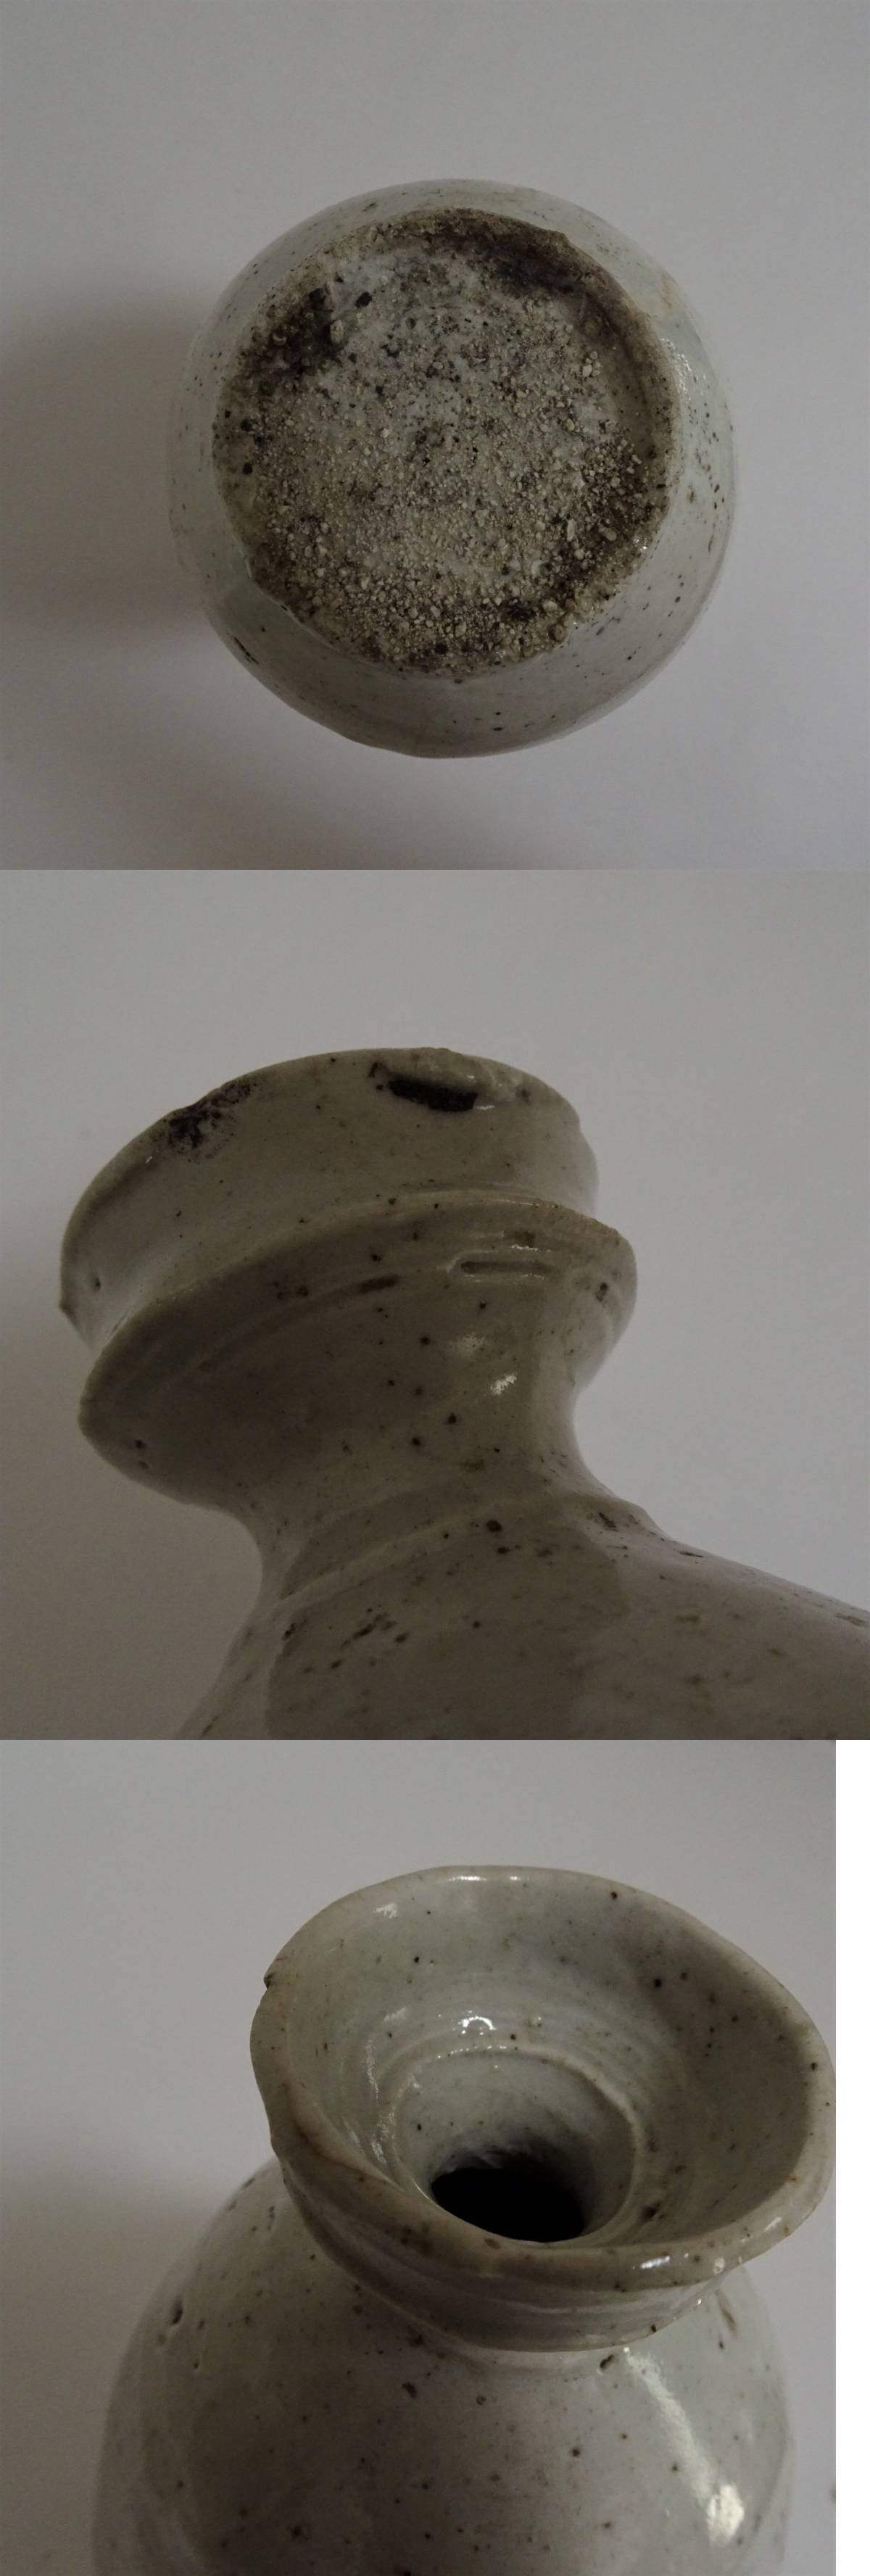 お気に入り】 朝鮮 骨董 高さ約22cm 白釉 花瓶 壺 李朝 古陶器 李朝